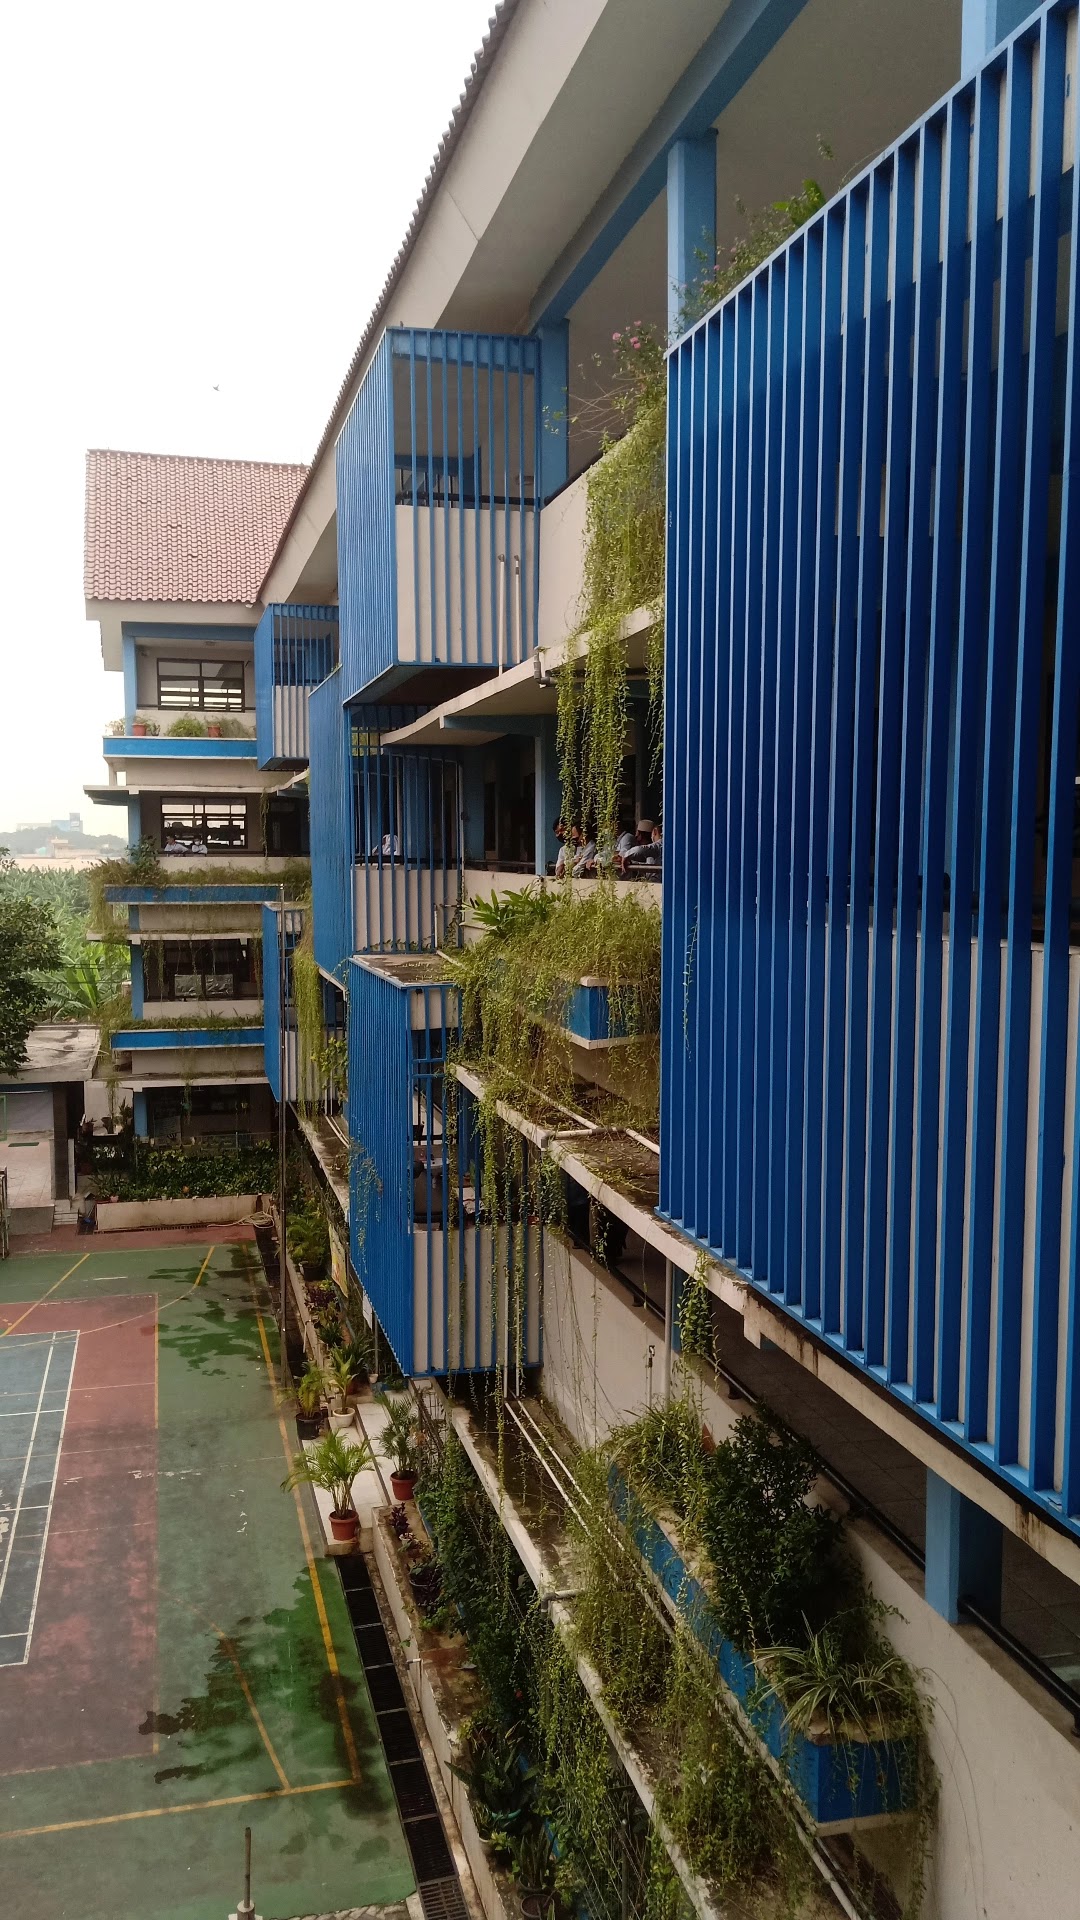 Foto SMP  Negeri 224 Jakarta, Kota Jakarta Barat